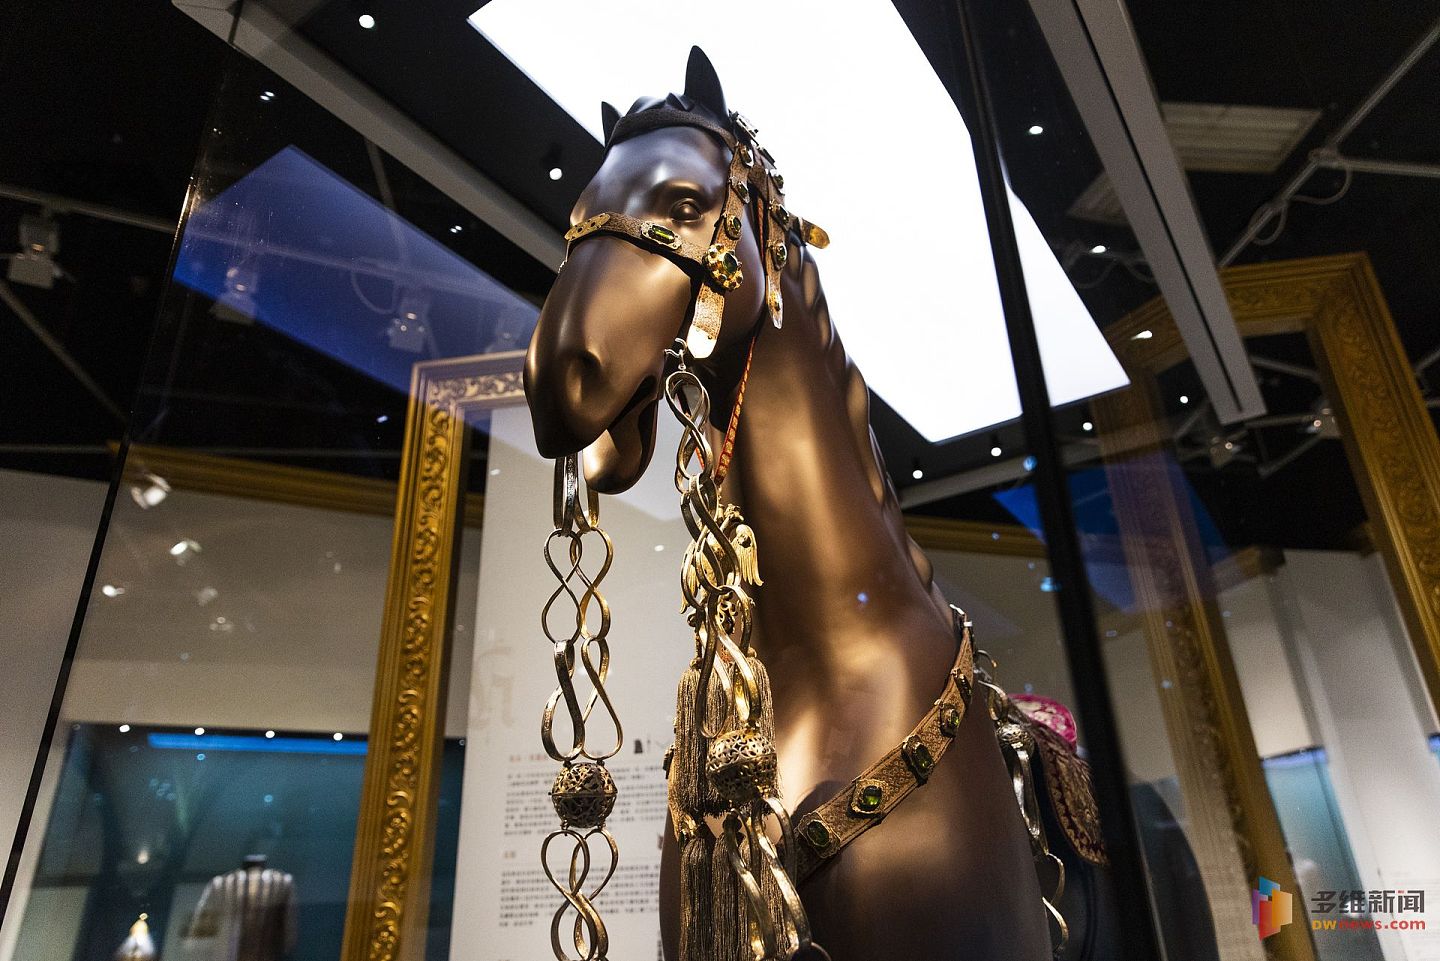 “圣耀皇权──俄罗斯皇家珍品展”5月29日起至8月底于沙田文化博物馆举行。(HK01)